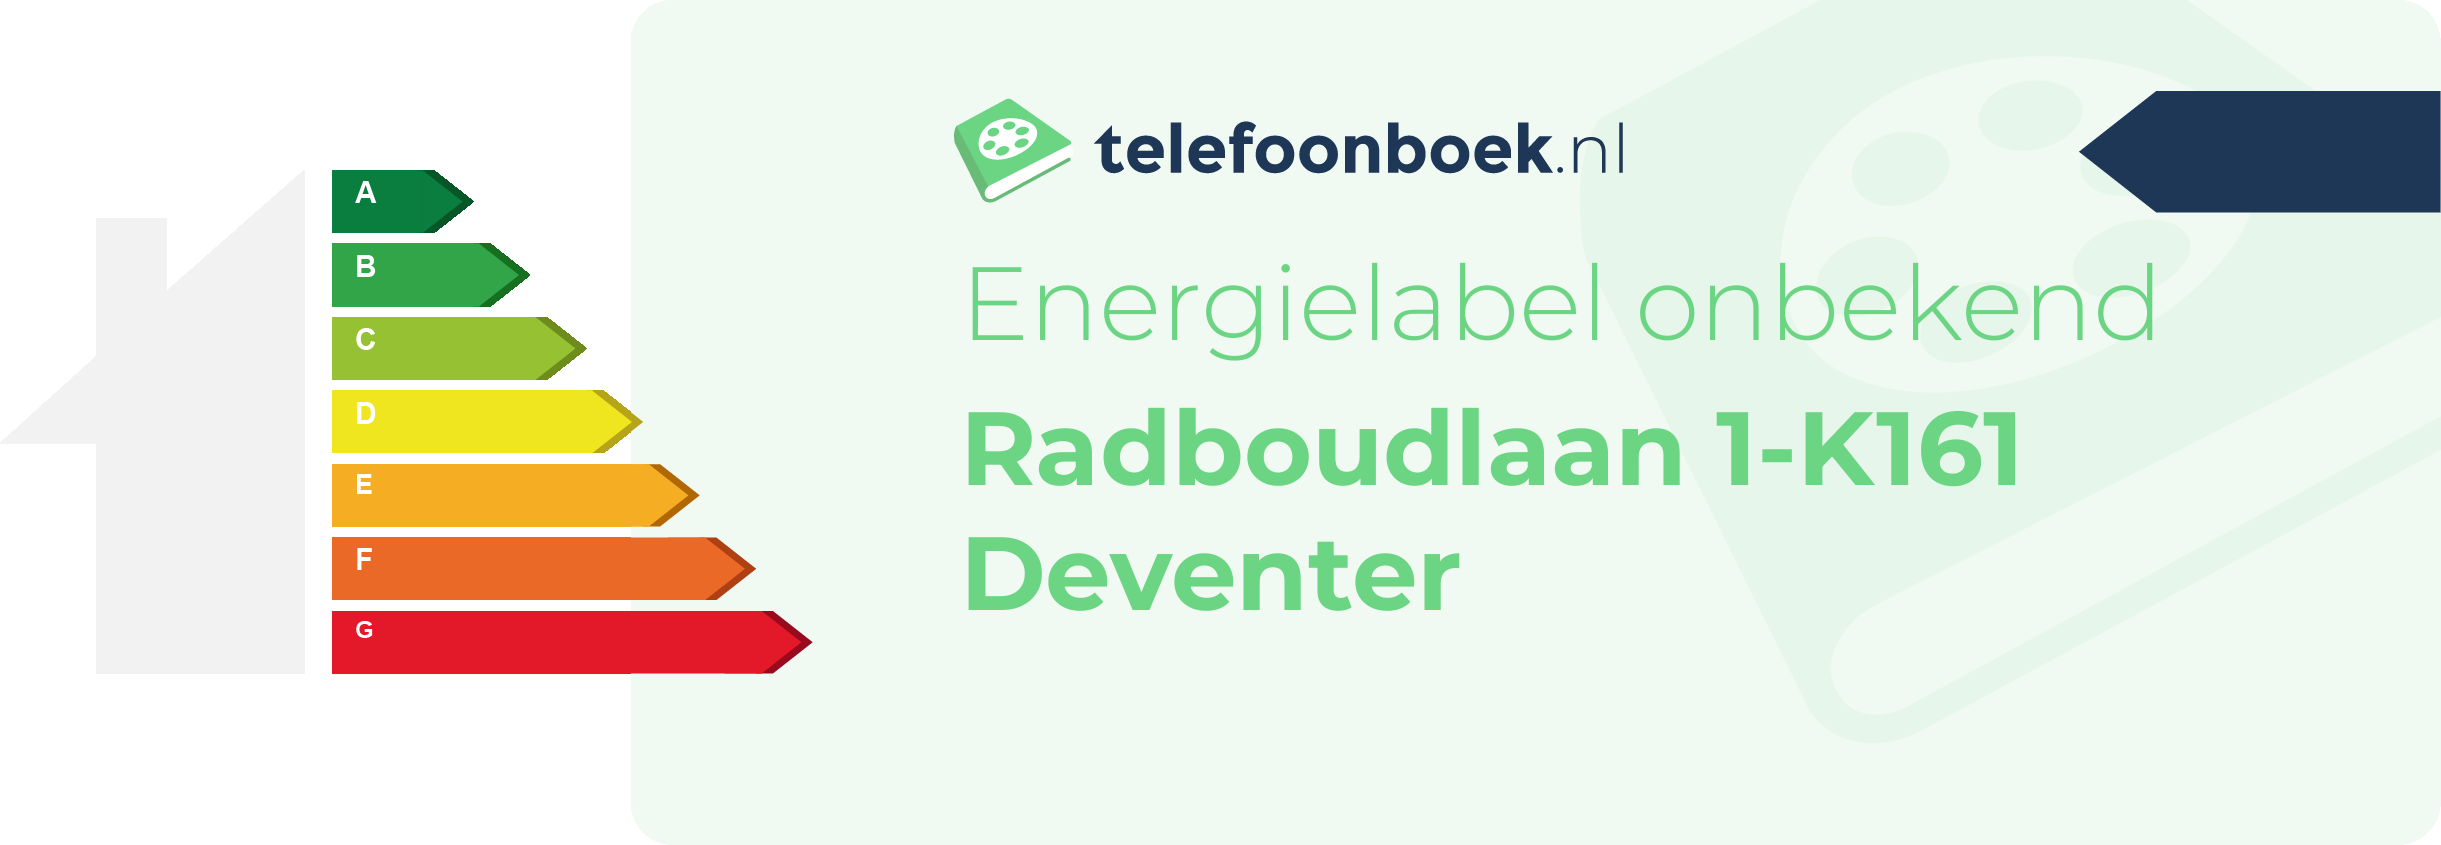 Energielabel Radboudlaan 1-K161 Deventer